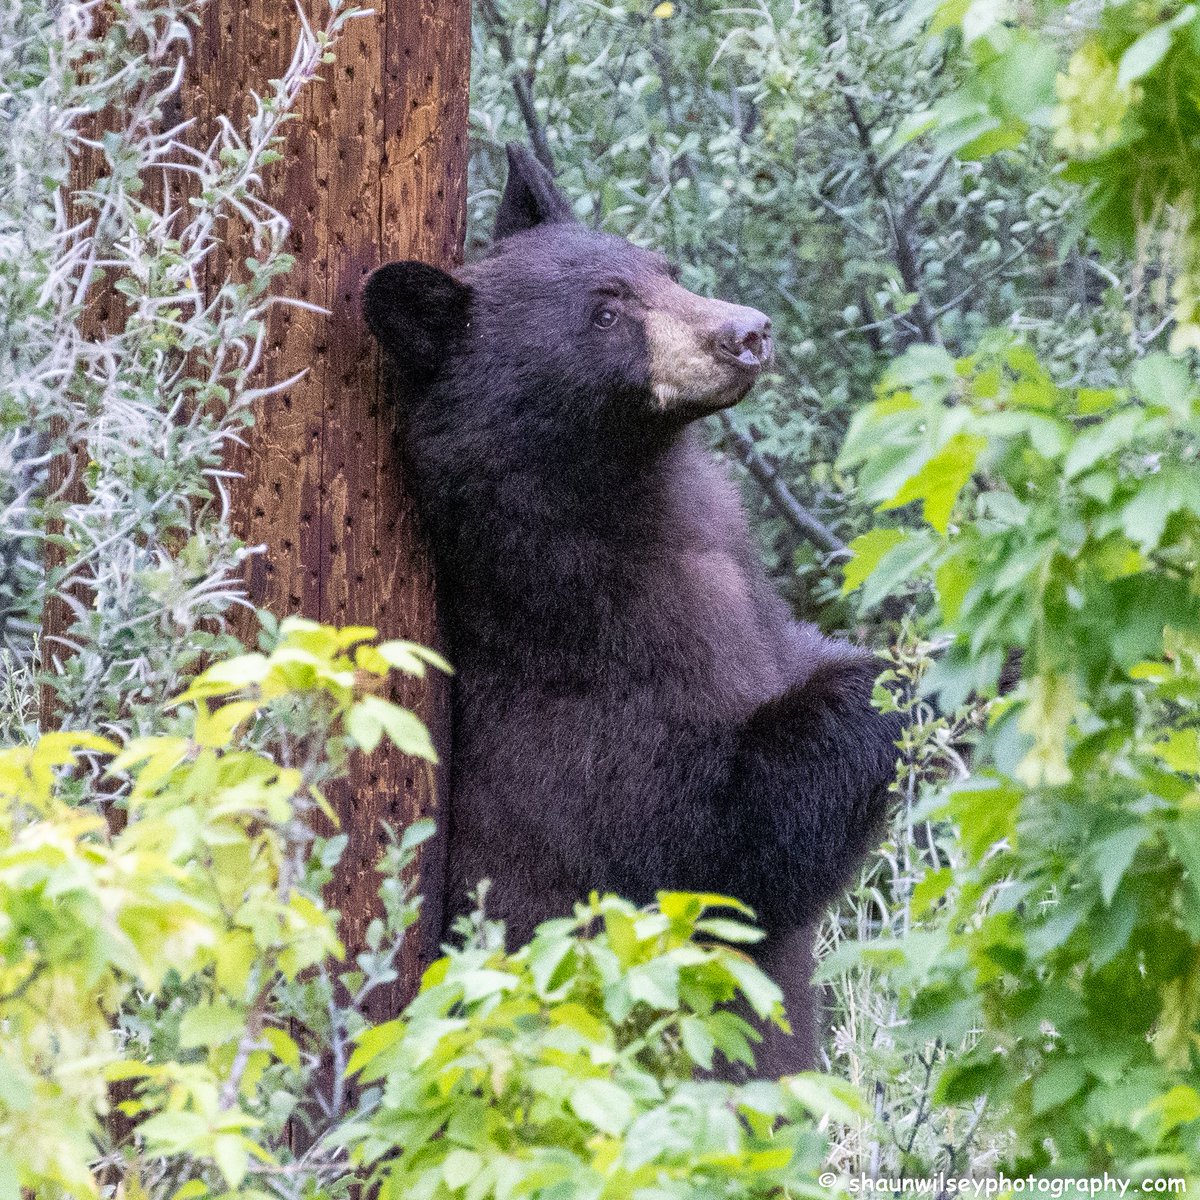 Black Bear scratching its back on a power pole. Colorado 8/21/2022. #colorado #coloradophotography #photography #wildlife #wildlifephotography #bear #bears #bearlovers #blackbear #blackbears #scratch